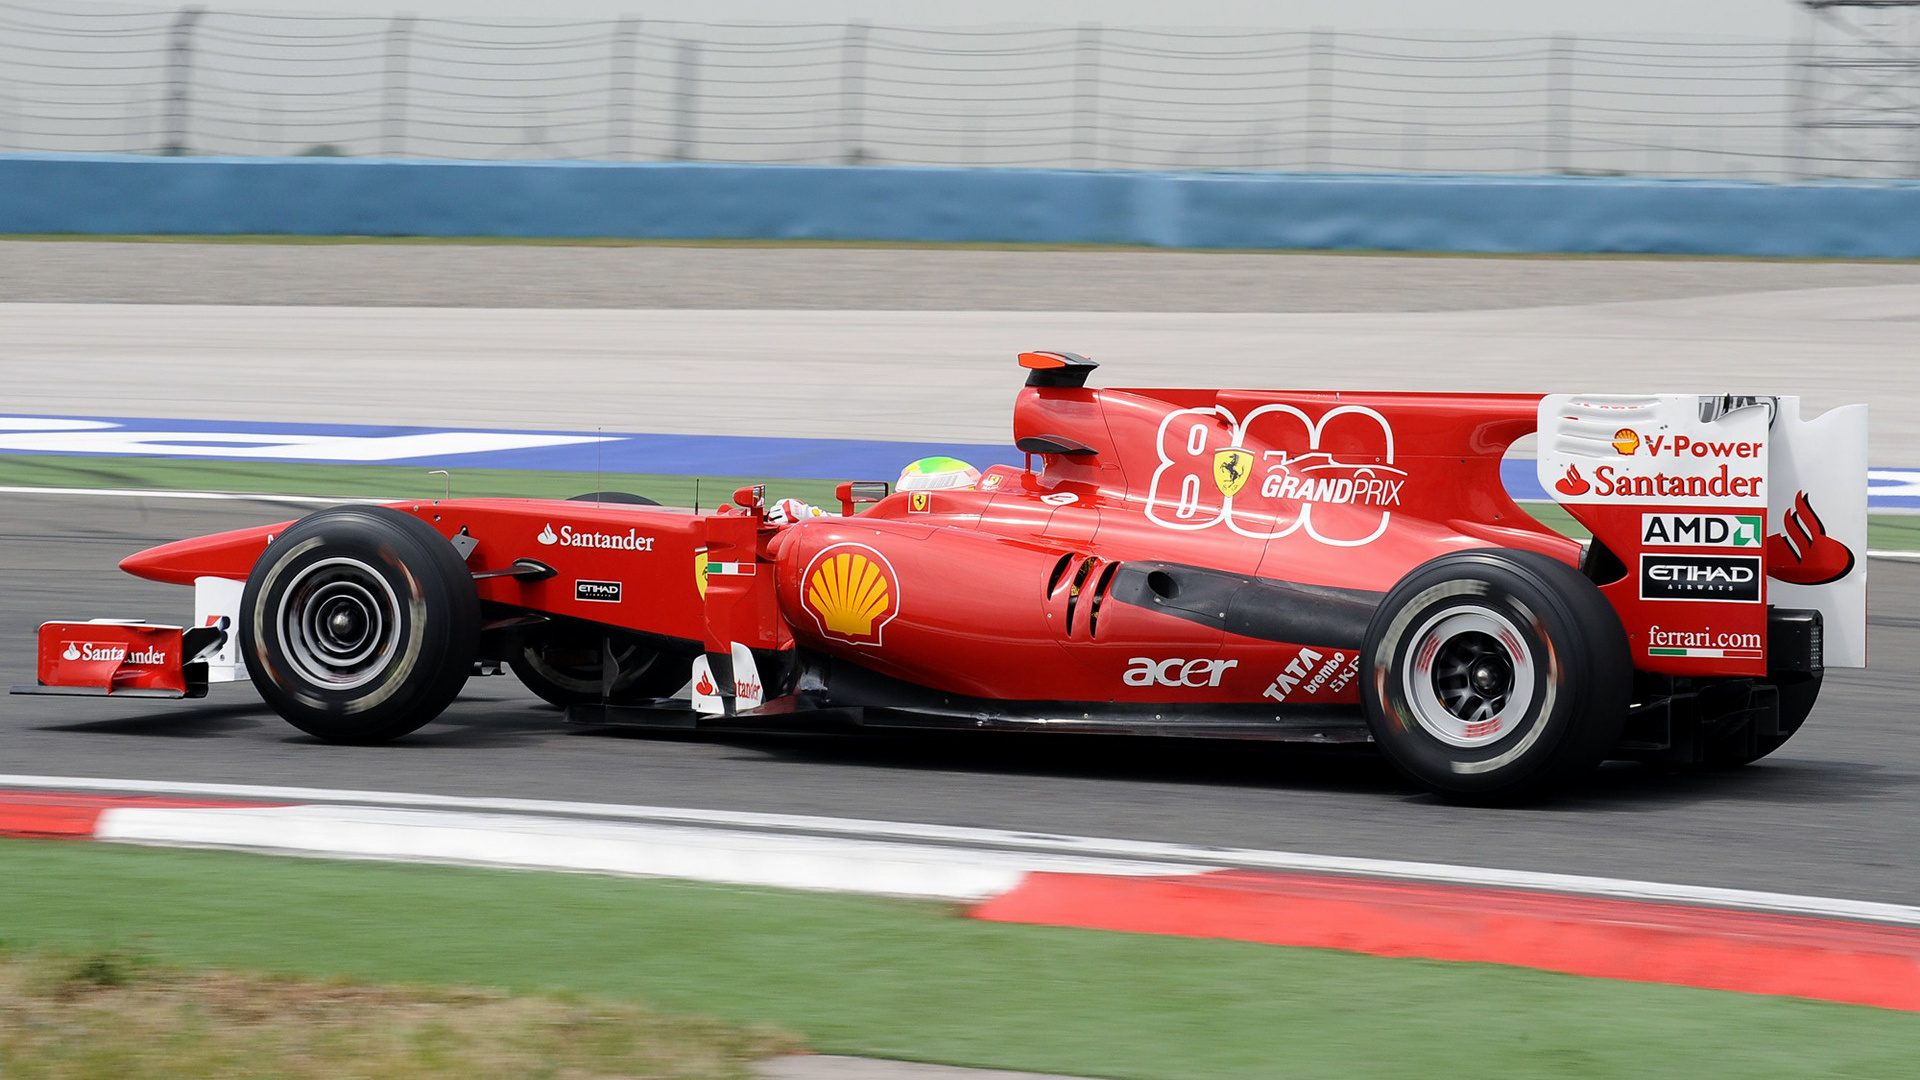 2010 Ferrari F10 - Wallpapers and HD Images | Car Pixel